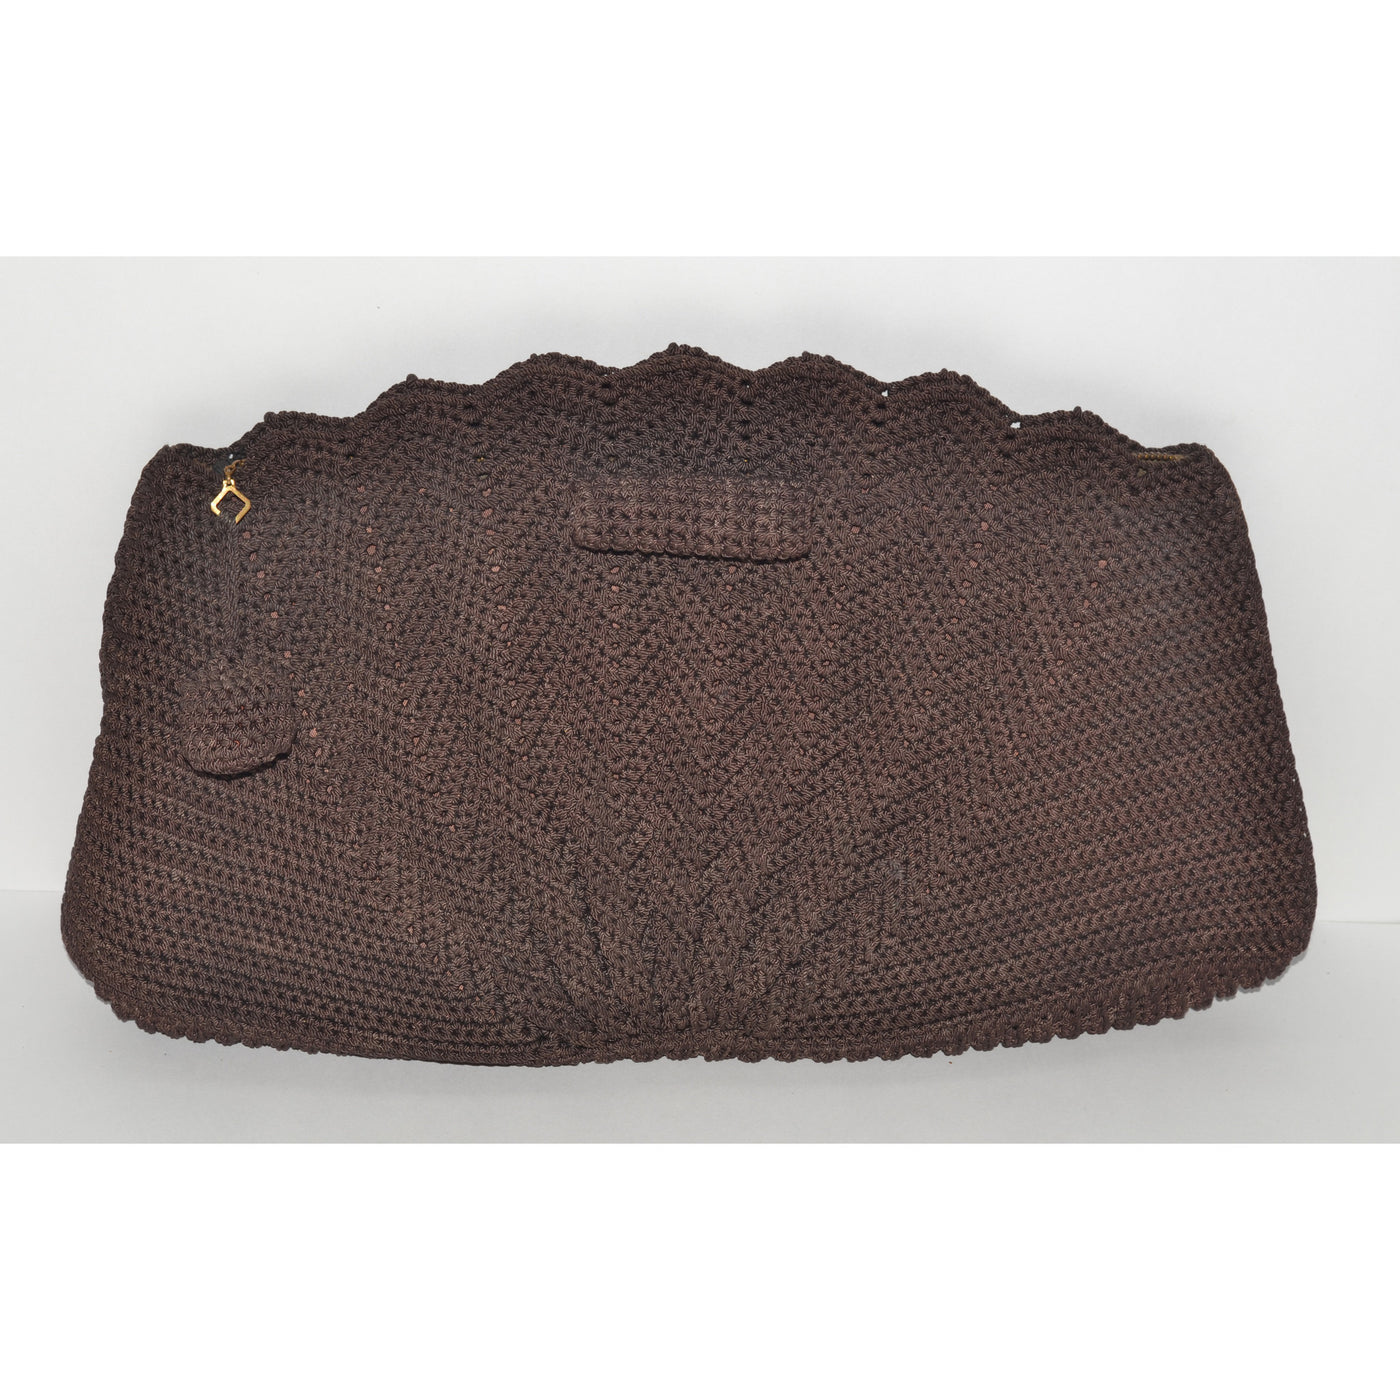 Vintage Brown Crochet Fan Clutch Purse